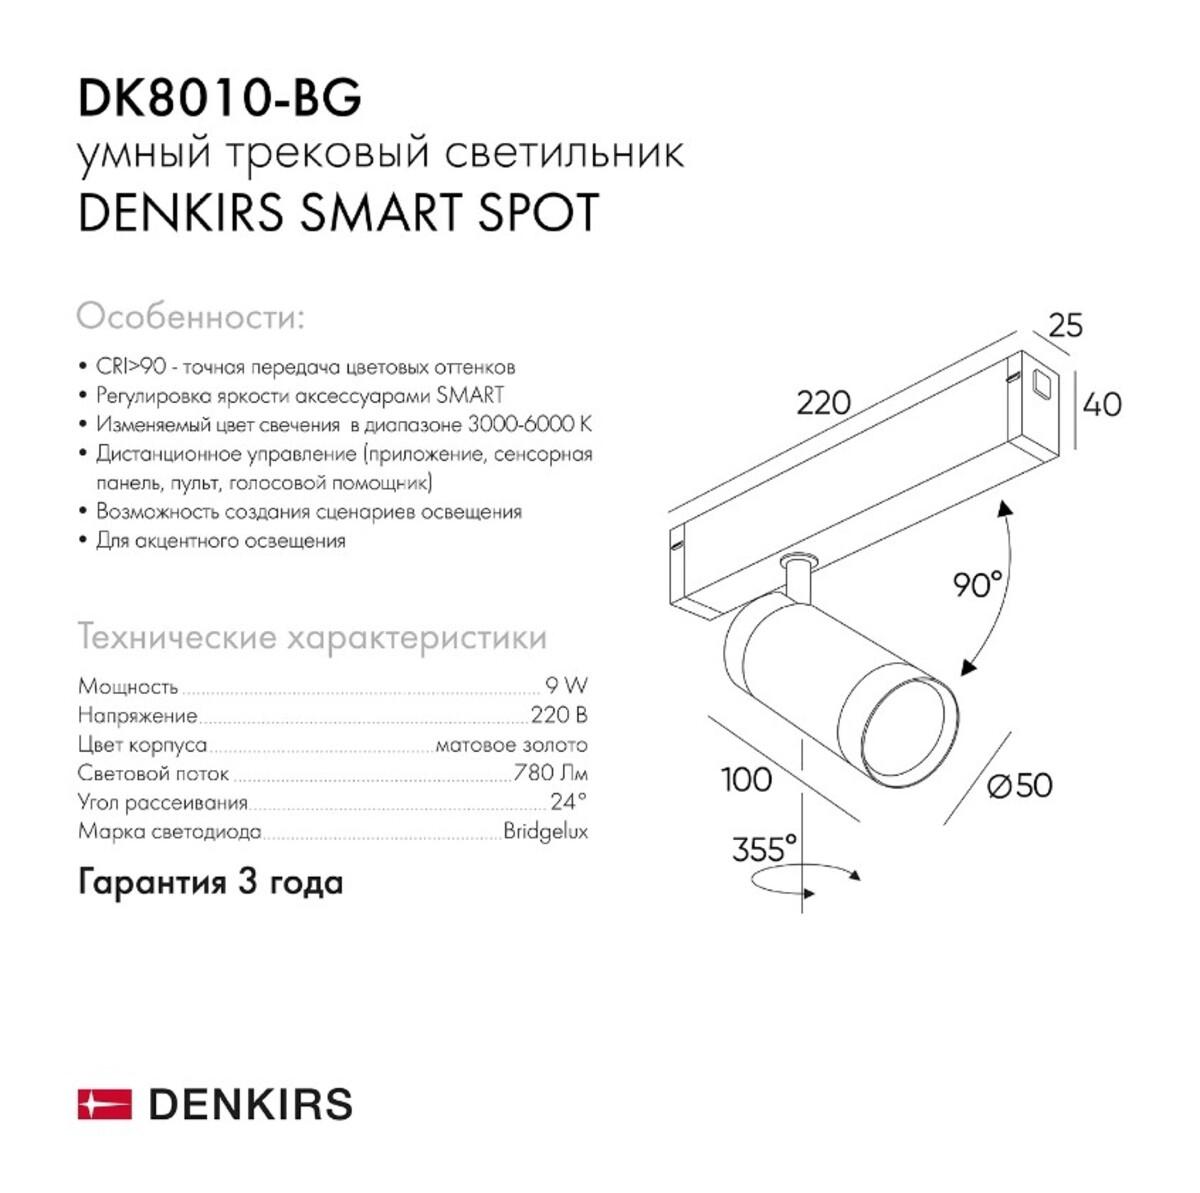 trekovyy_svetodiodnyy_svetilnik_denkirs_smart_spot_dk8010_bg_1